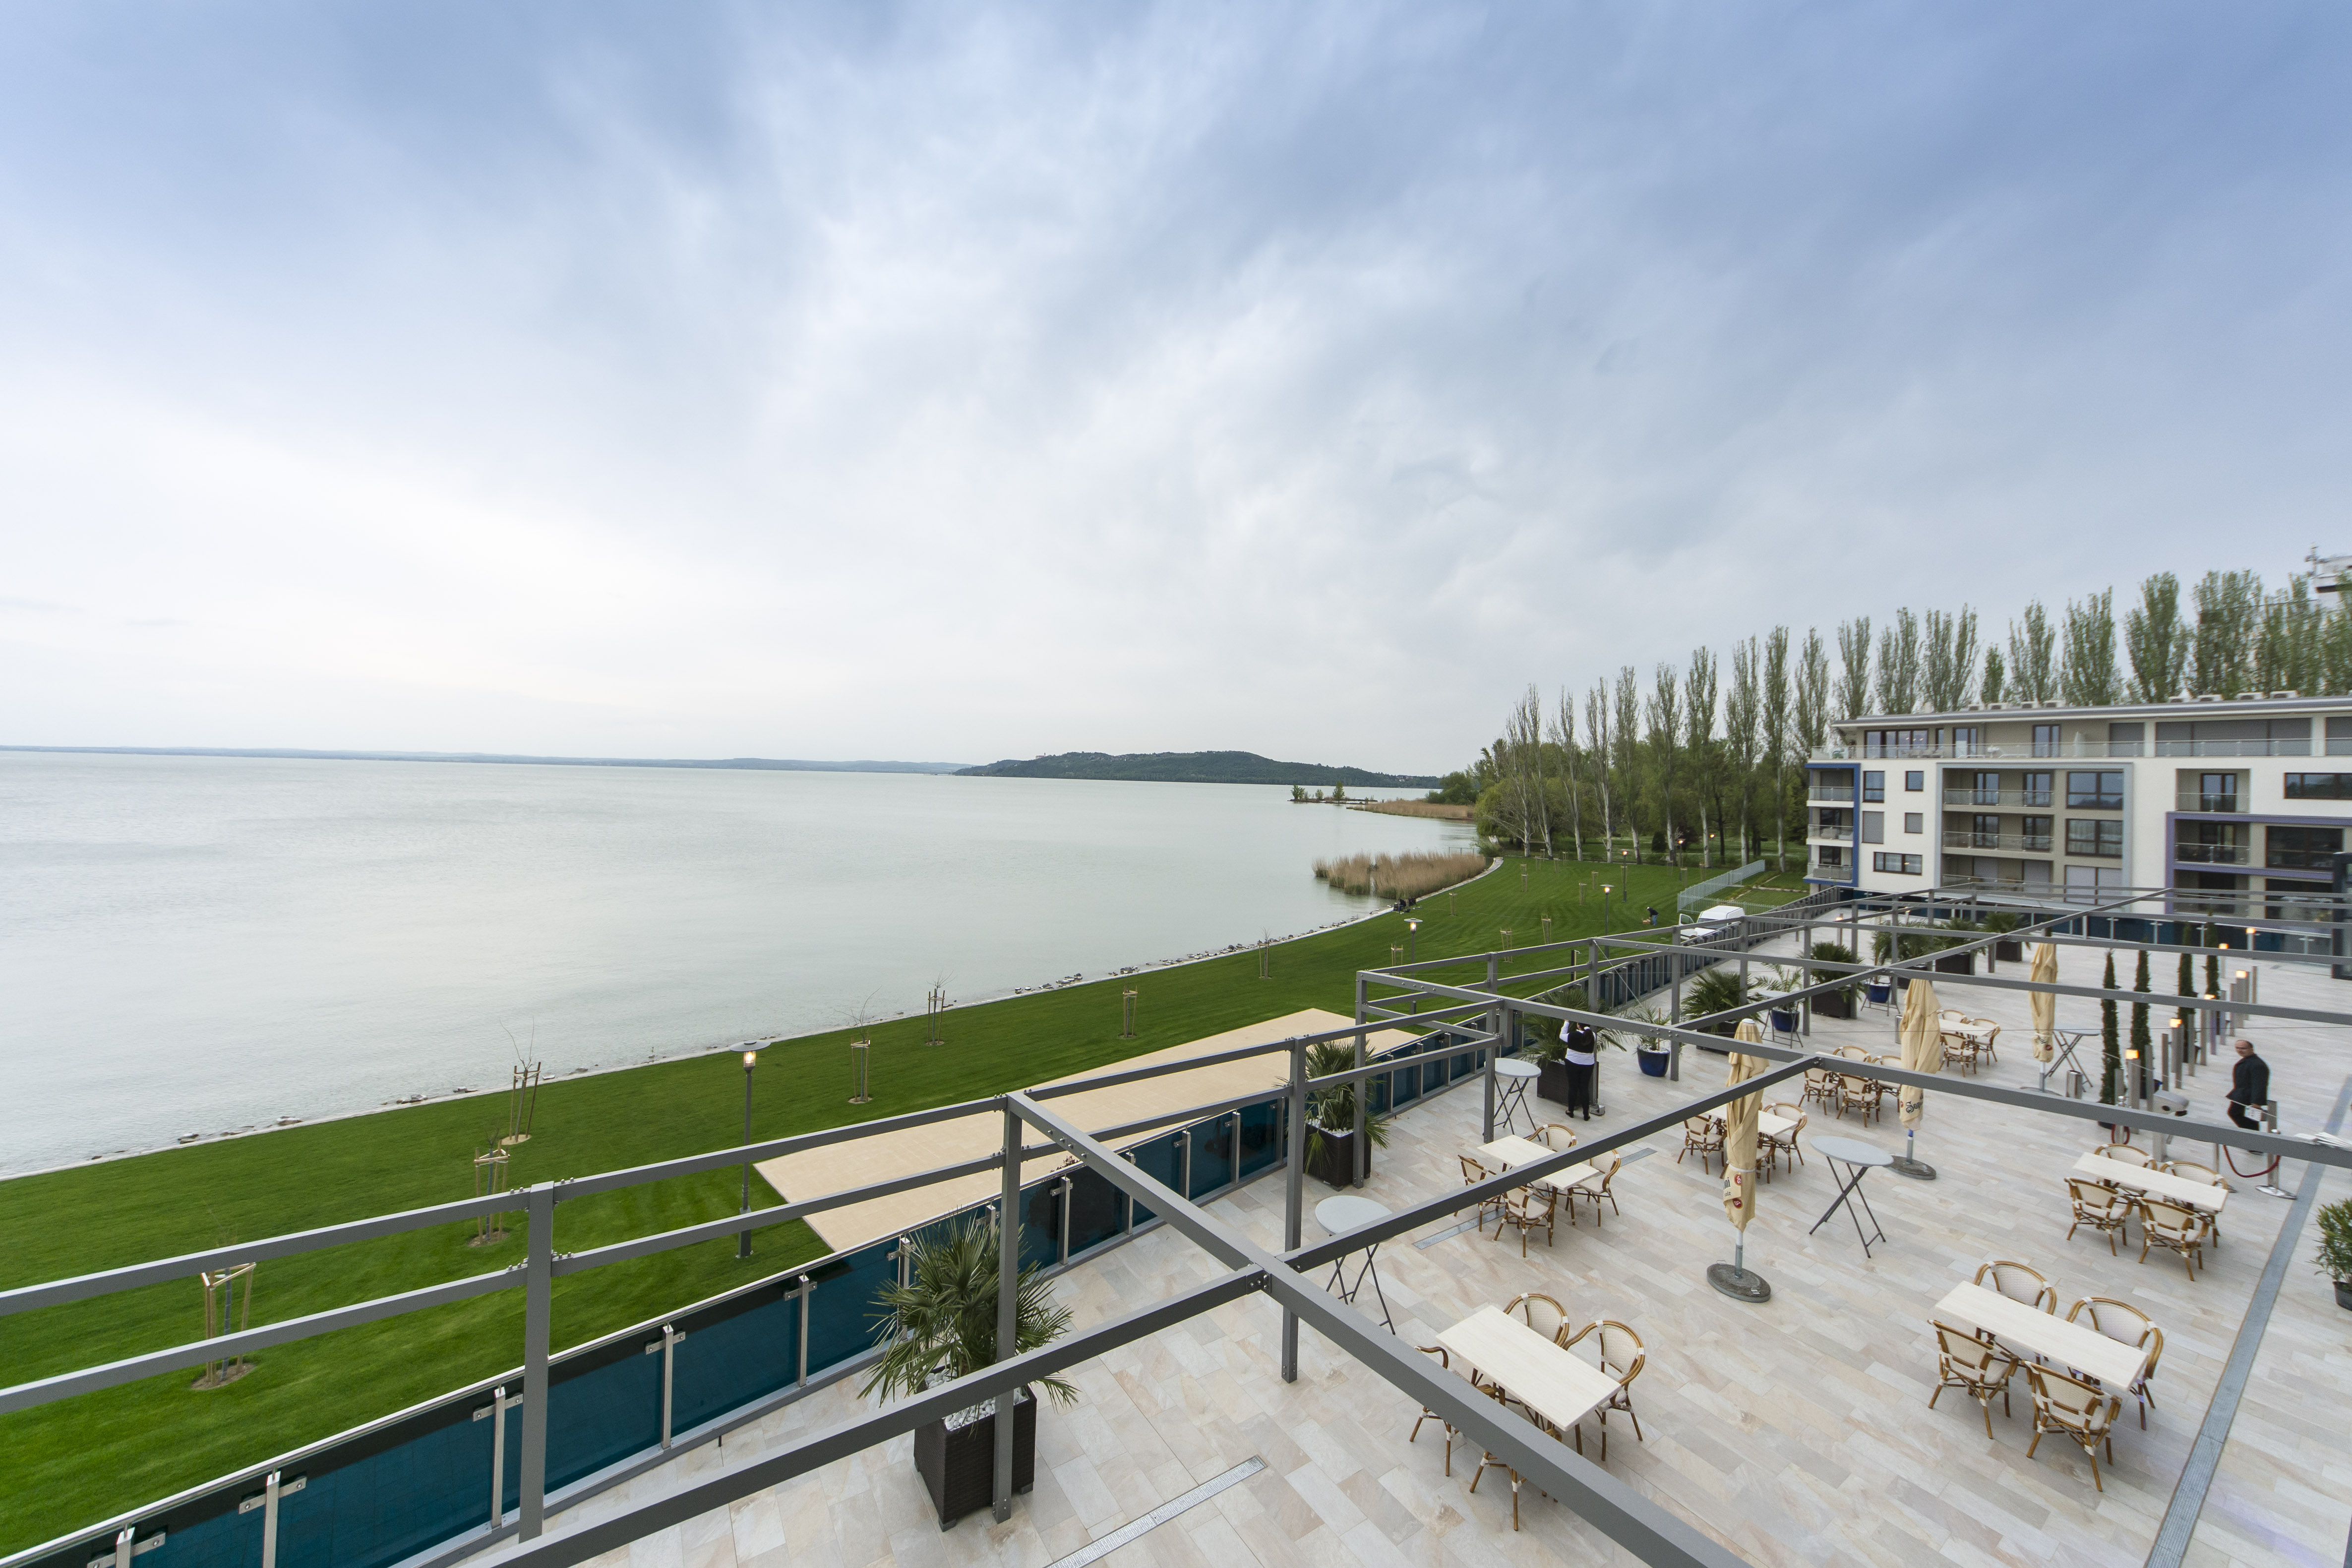 Heti híradó: Balatonfüred lett 2020 legnépszerűbb szálláshelye, nem enyhítenék a vendéglátóhelyek korlátozásait